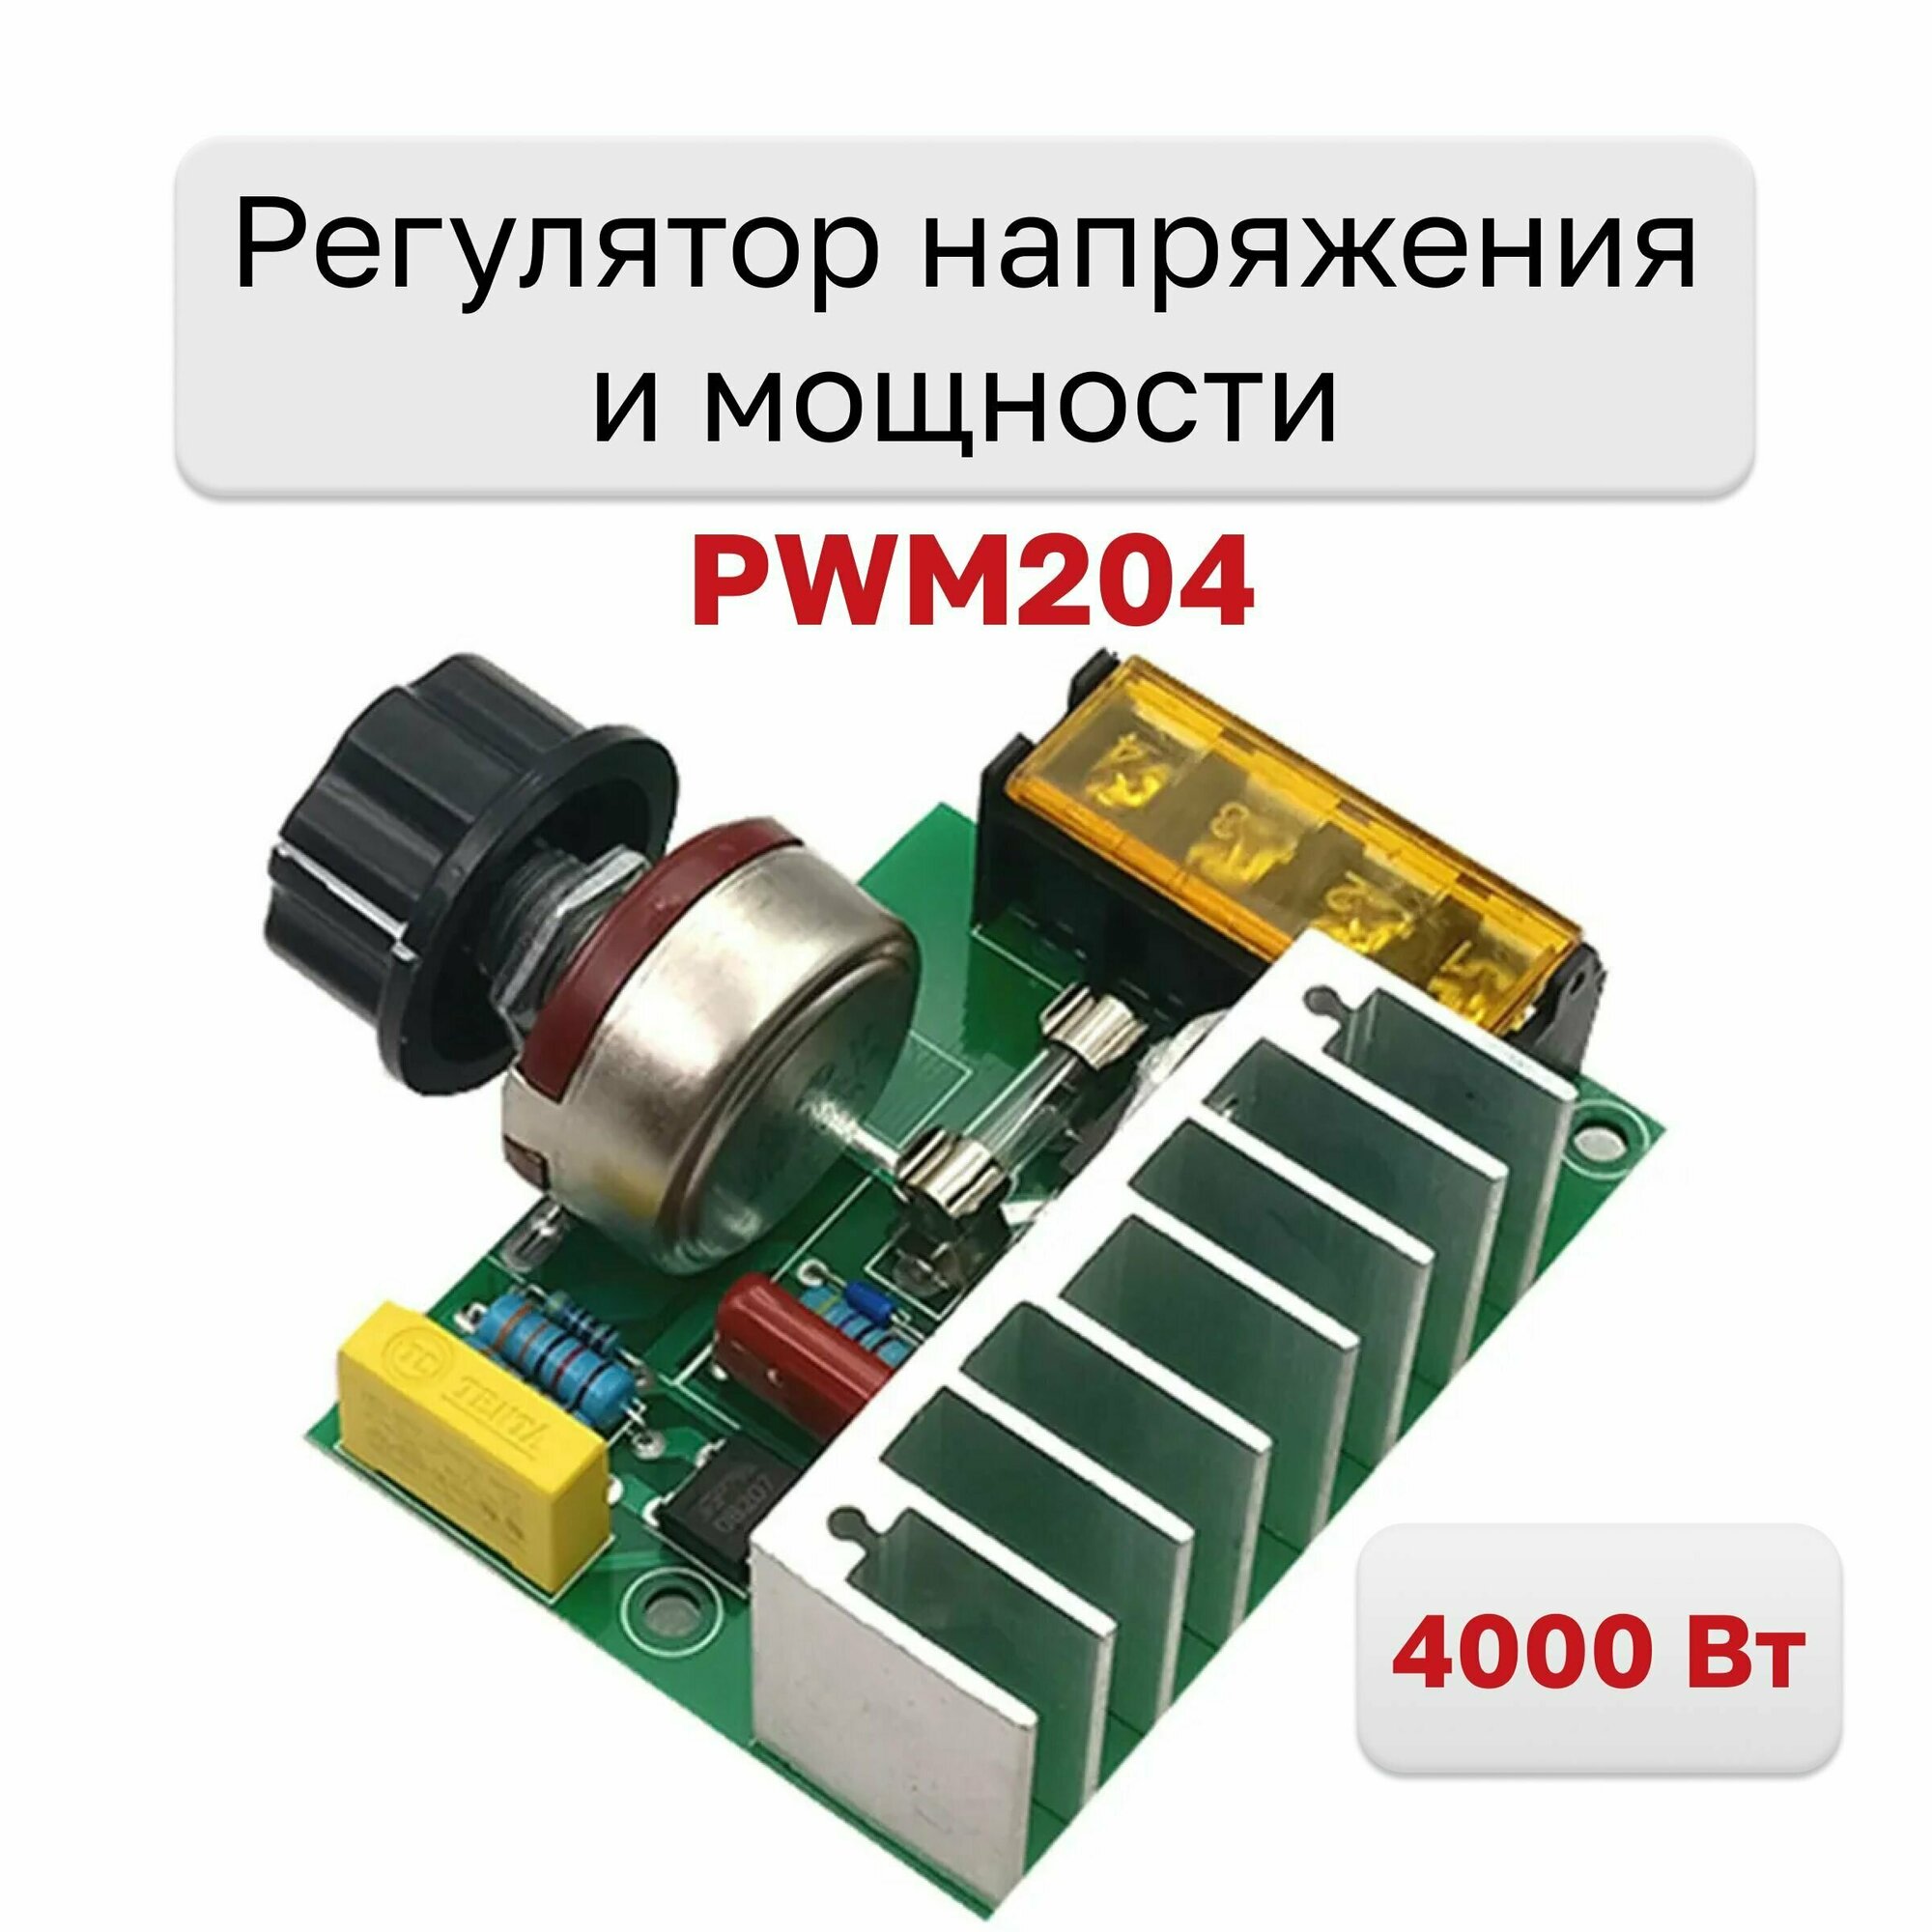 PWM204, Регулятор напряжения и мощности 220В 4000Вт